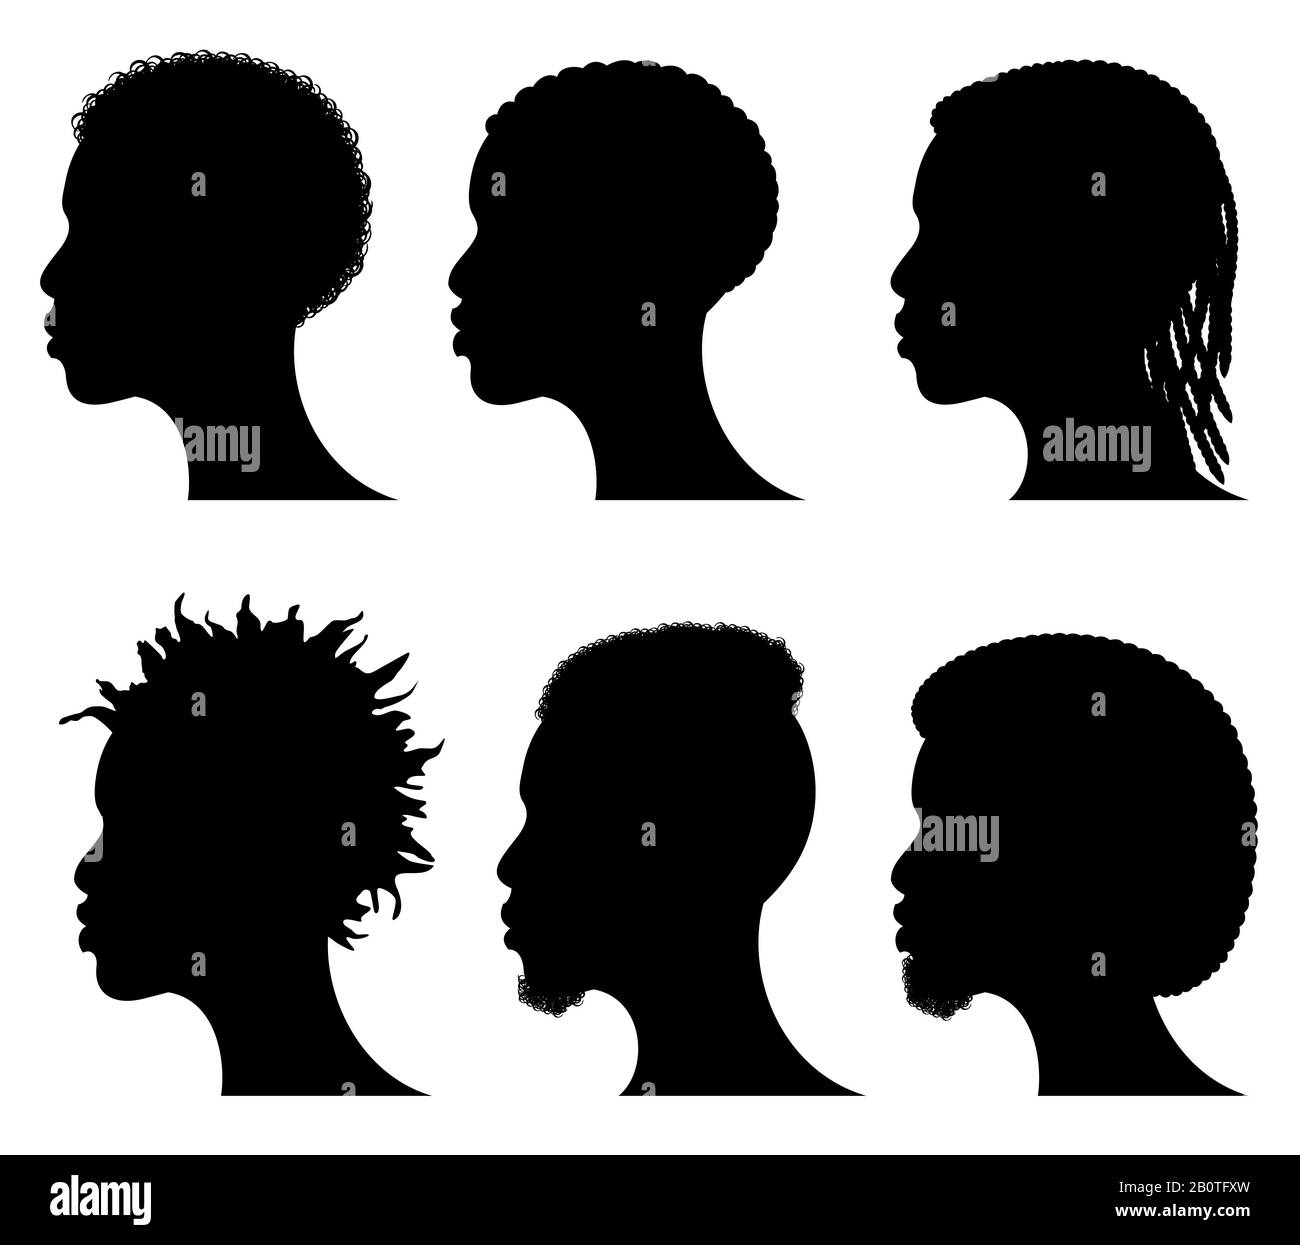 Les jeunes hommes Afro-américains font face à des silhouettes. Profils noirs mâles africains. Coiffure profil silhouette tête, illustration des cheveux afro-américains Illustration de Vecteur